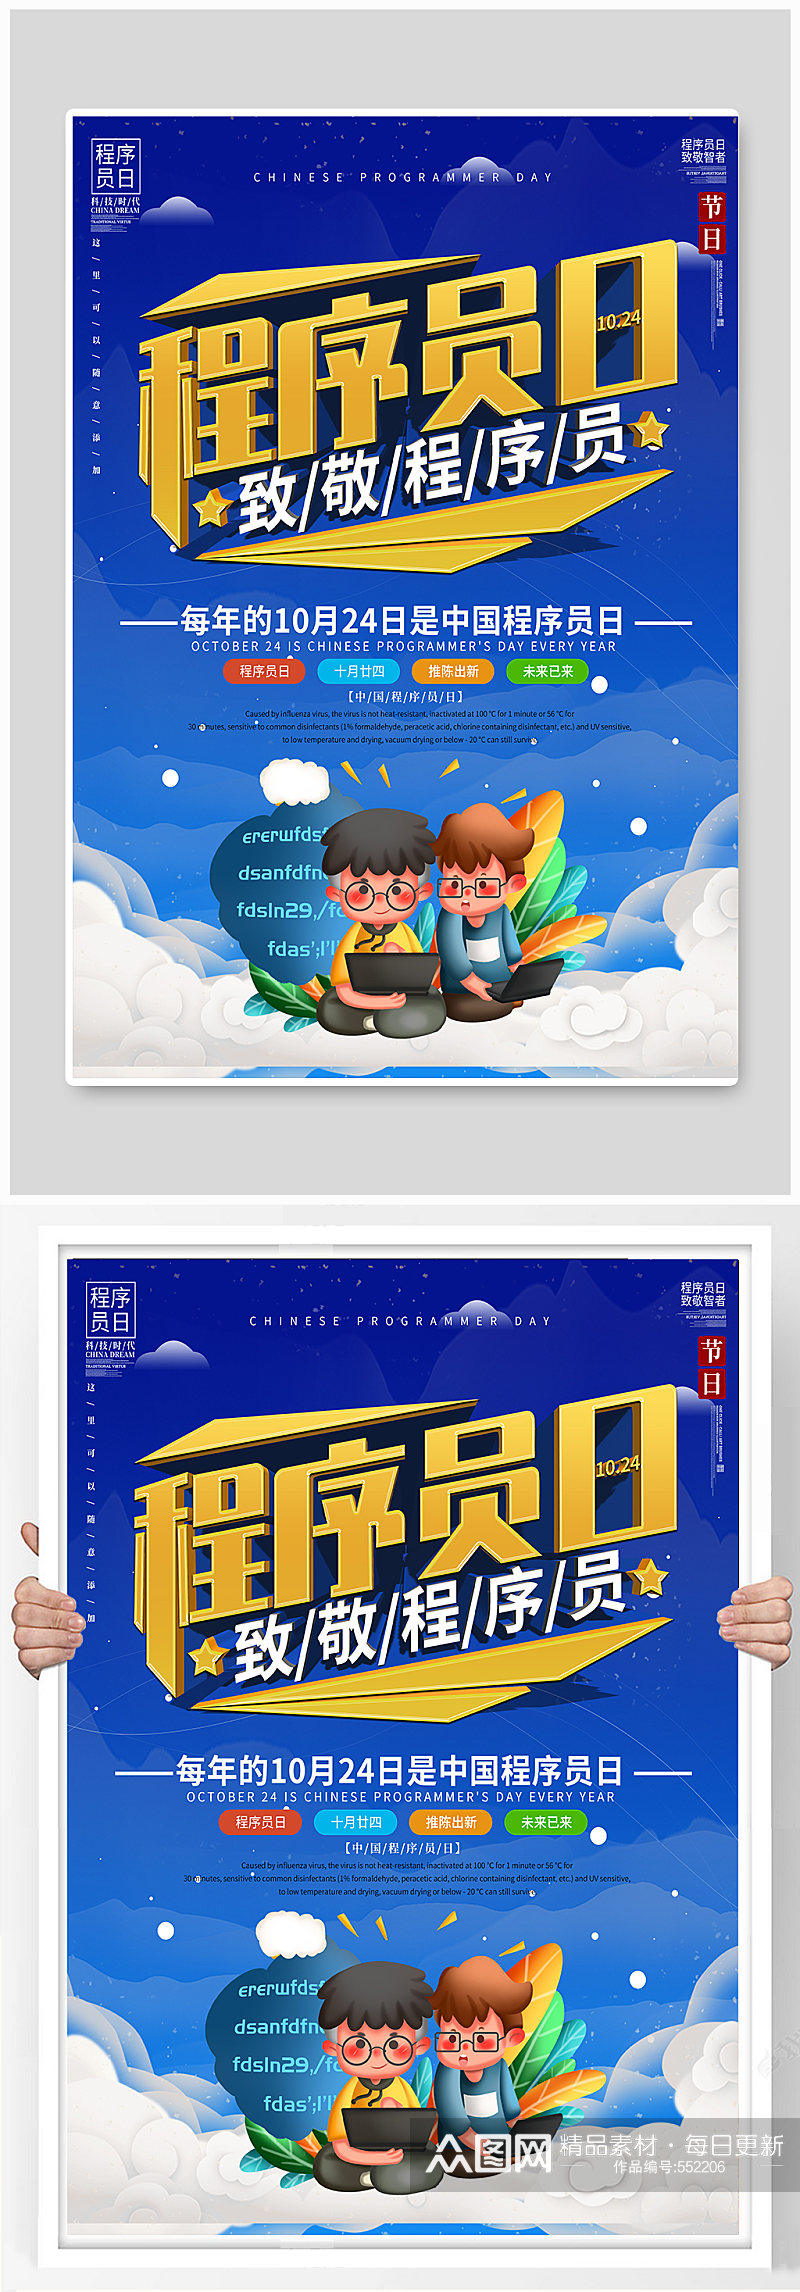 中国 程序员节 日宣传海报素材